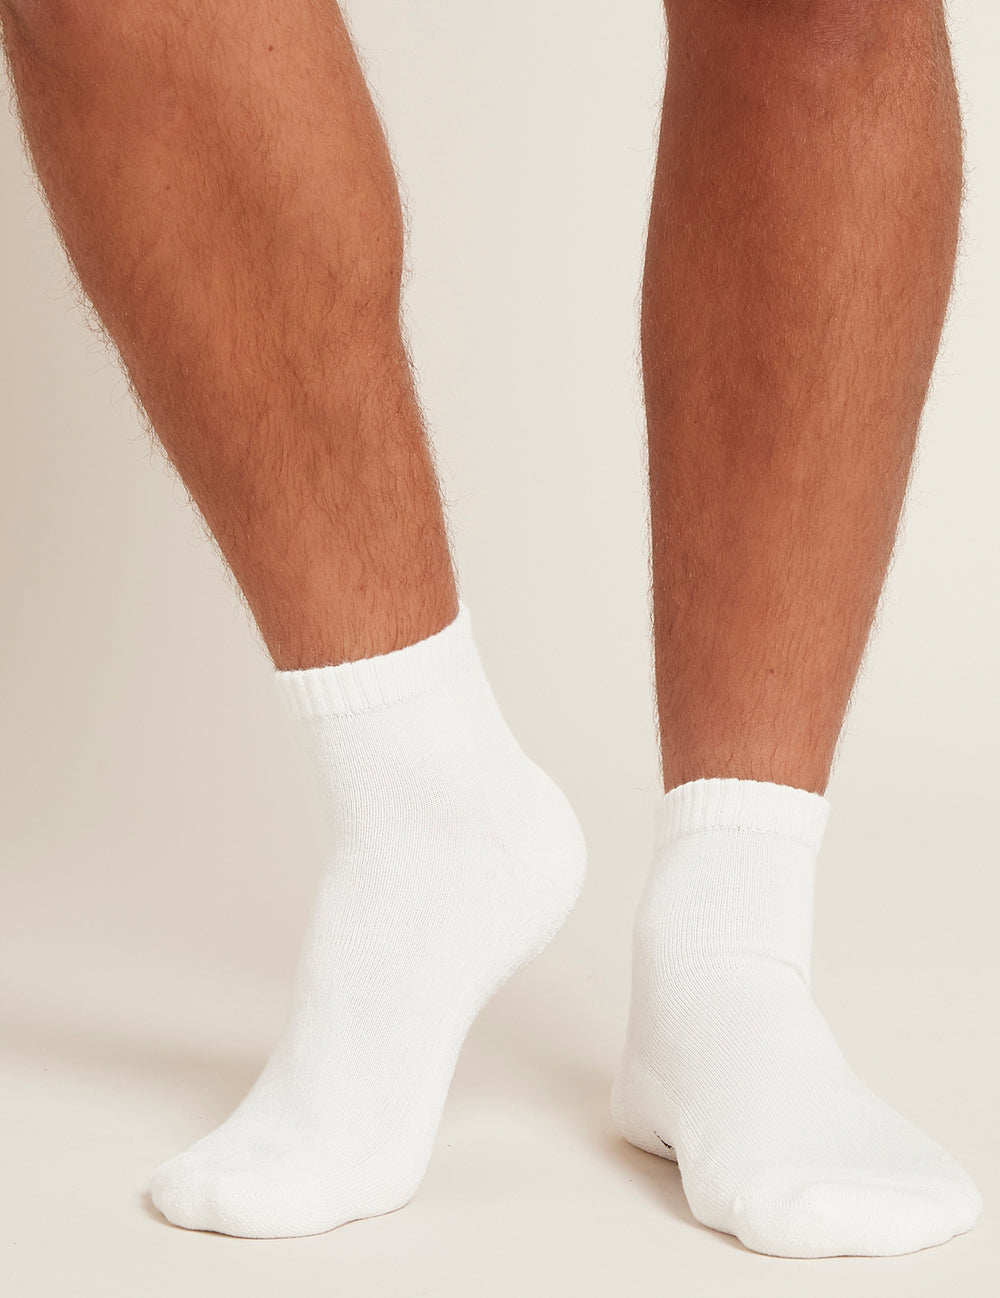 Pánské bílé ponožky Boody Cushioned Sports Ankle Socks